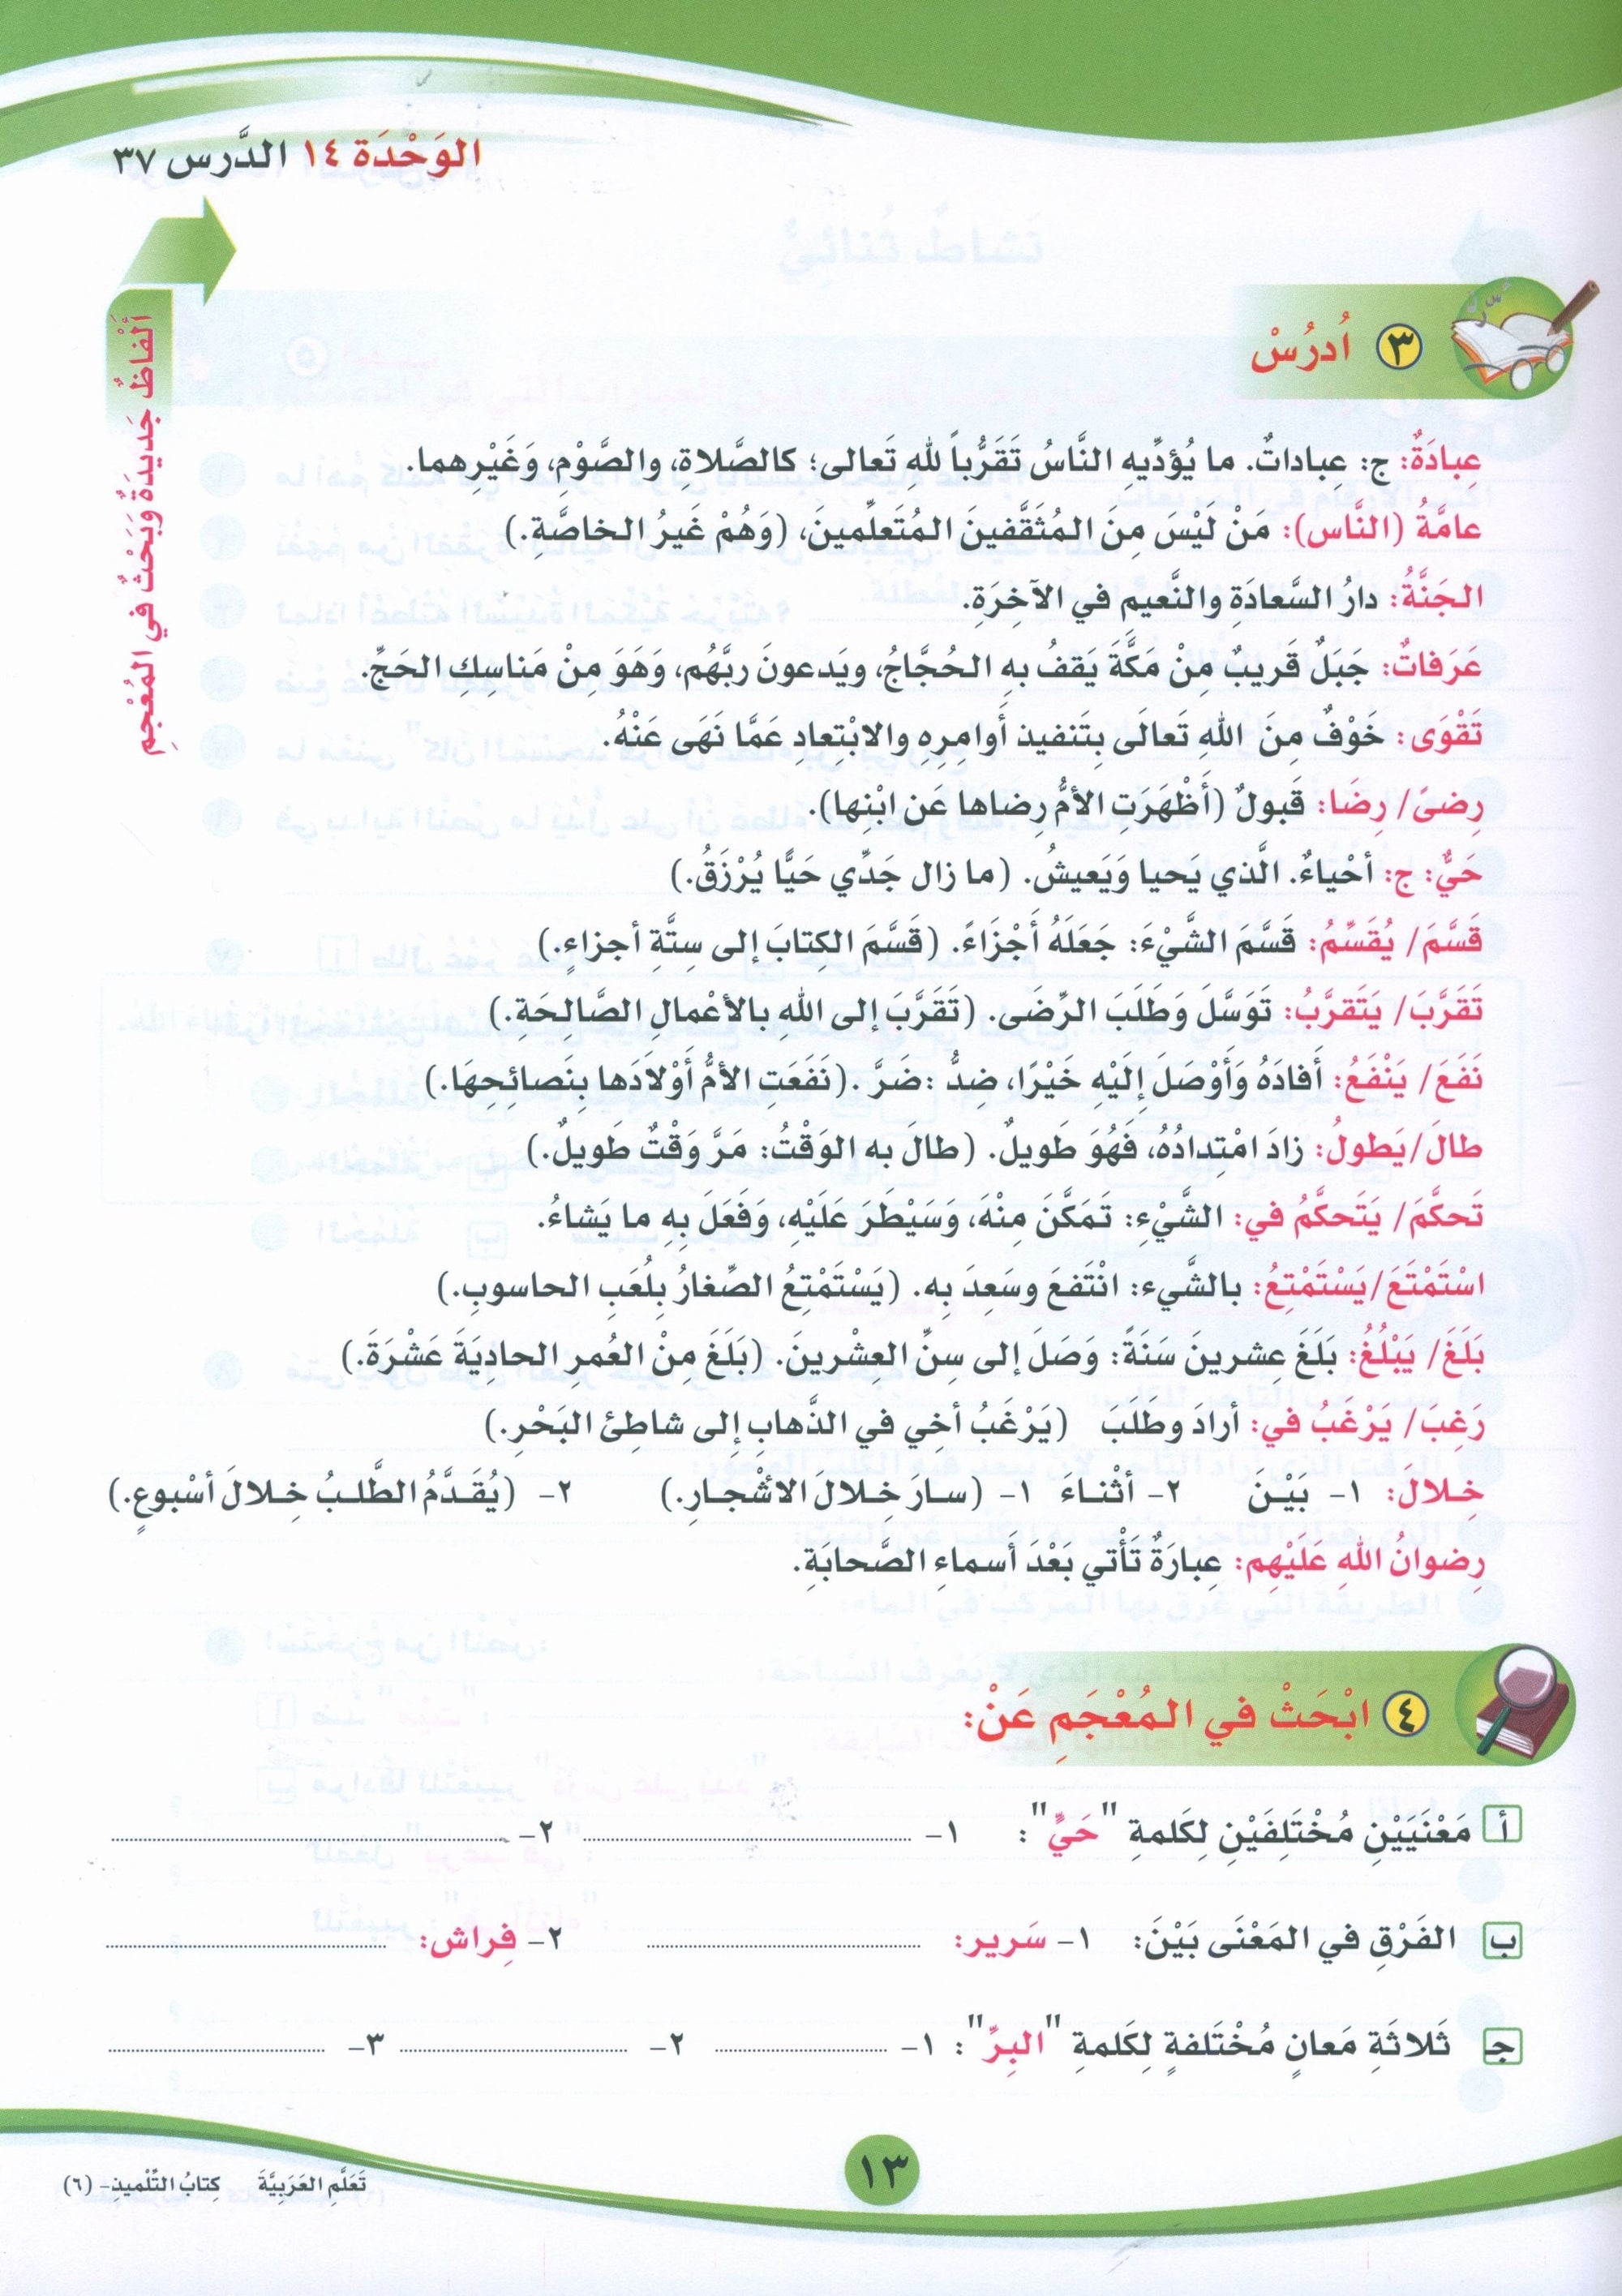 ICO Learn Arabic Textbook Level 6 Part 2 تعلم العربية كتاب التلميذ